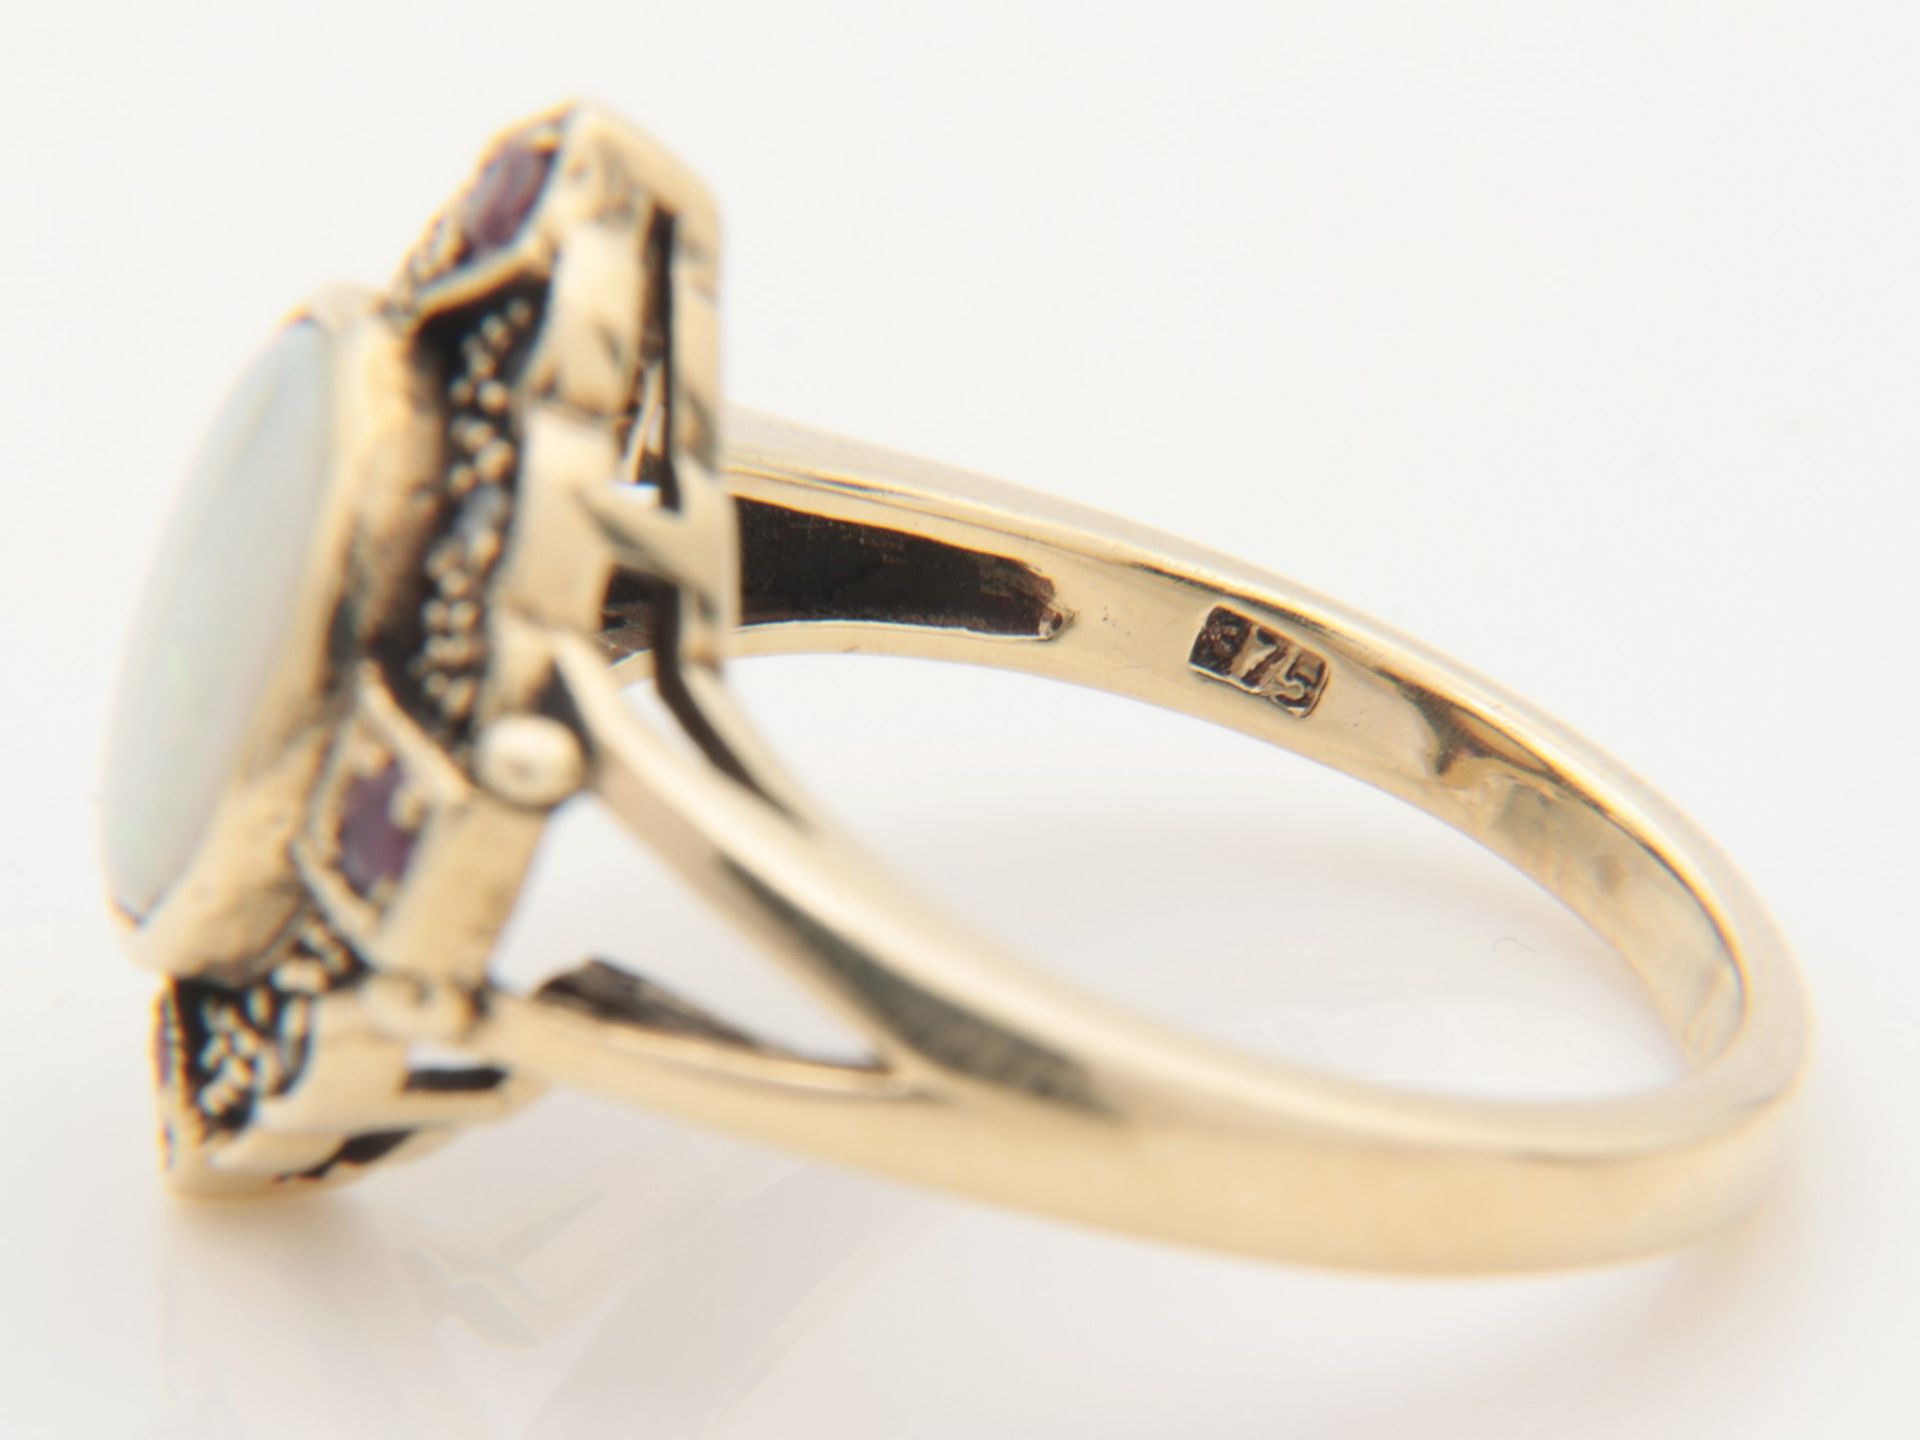 Diamant/Opal - Damenring GG 375, leicht rautenförmiger Ringkopf, mittig besetzt mit einem Opal- - Bild 6 aus 6